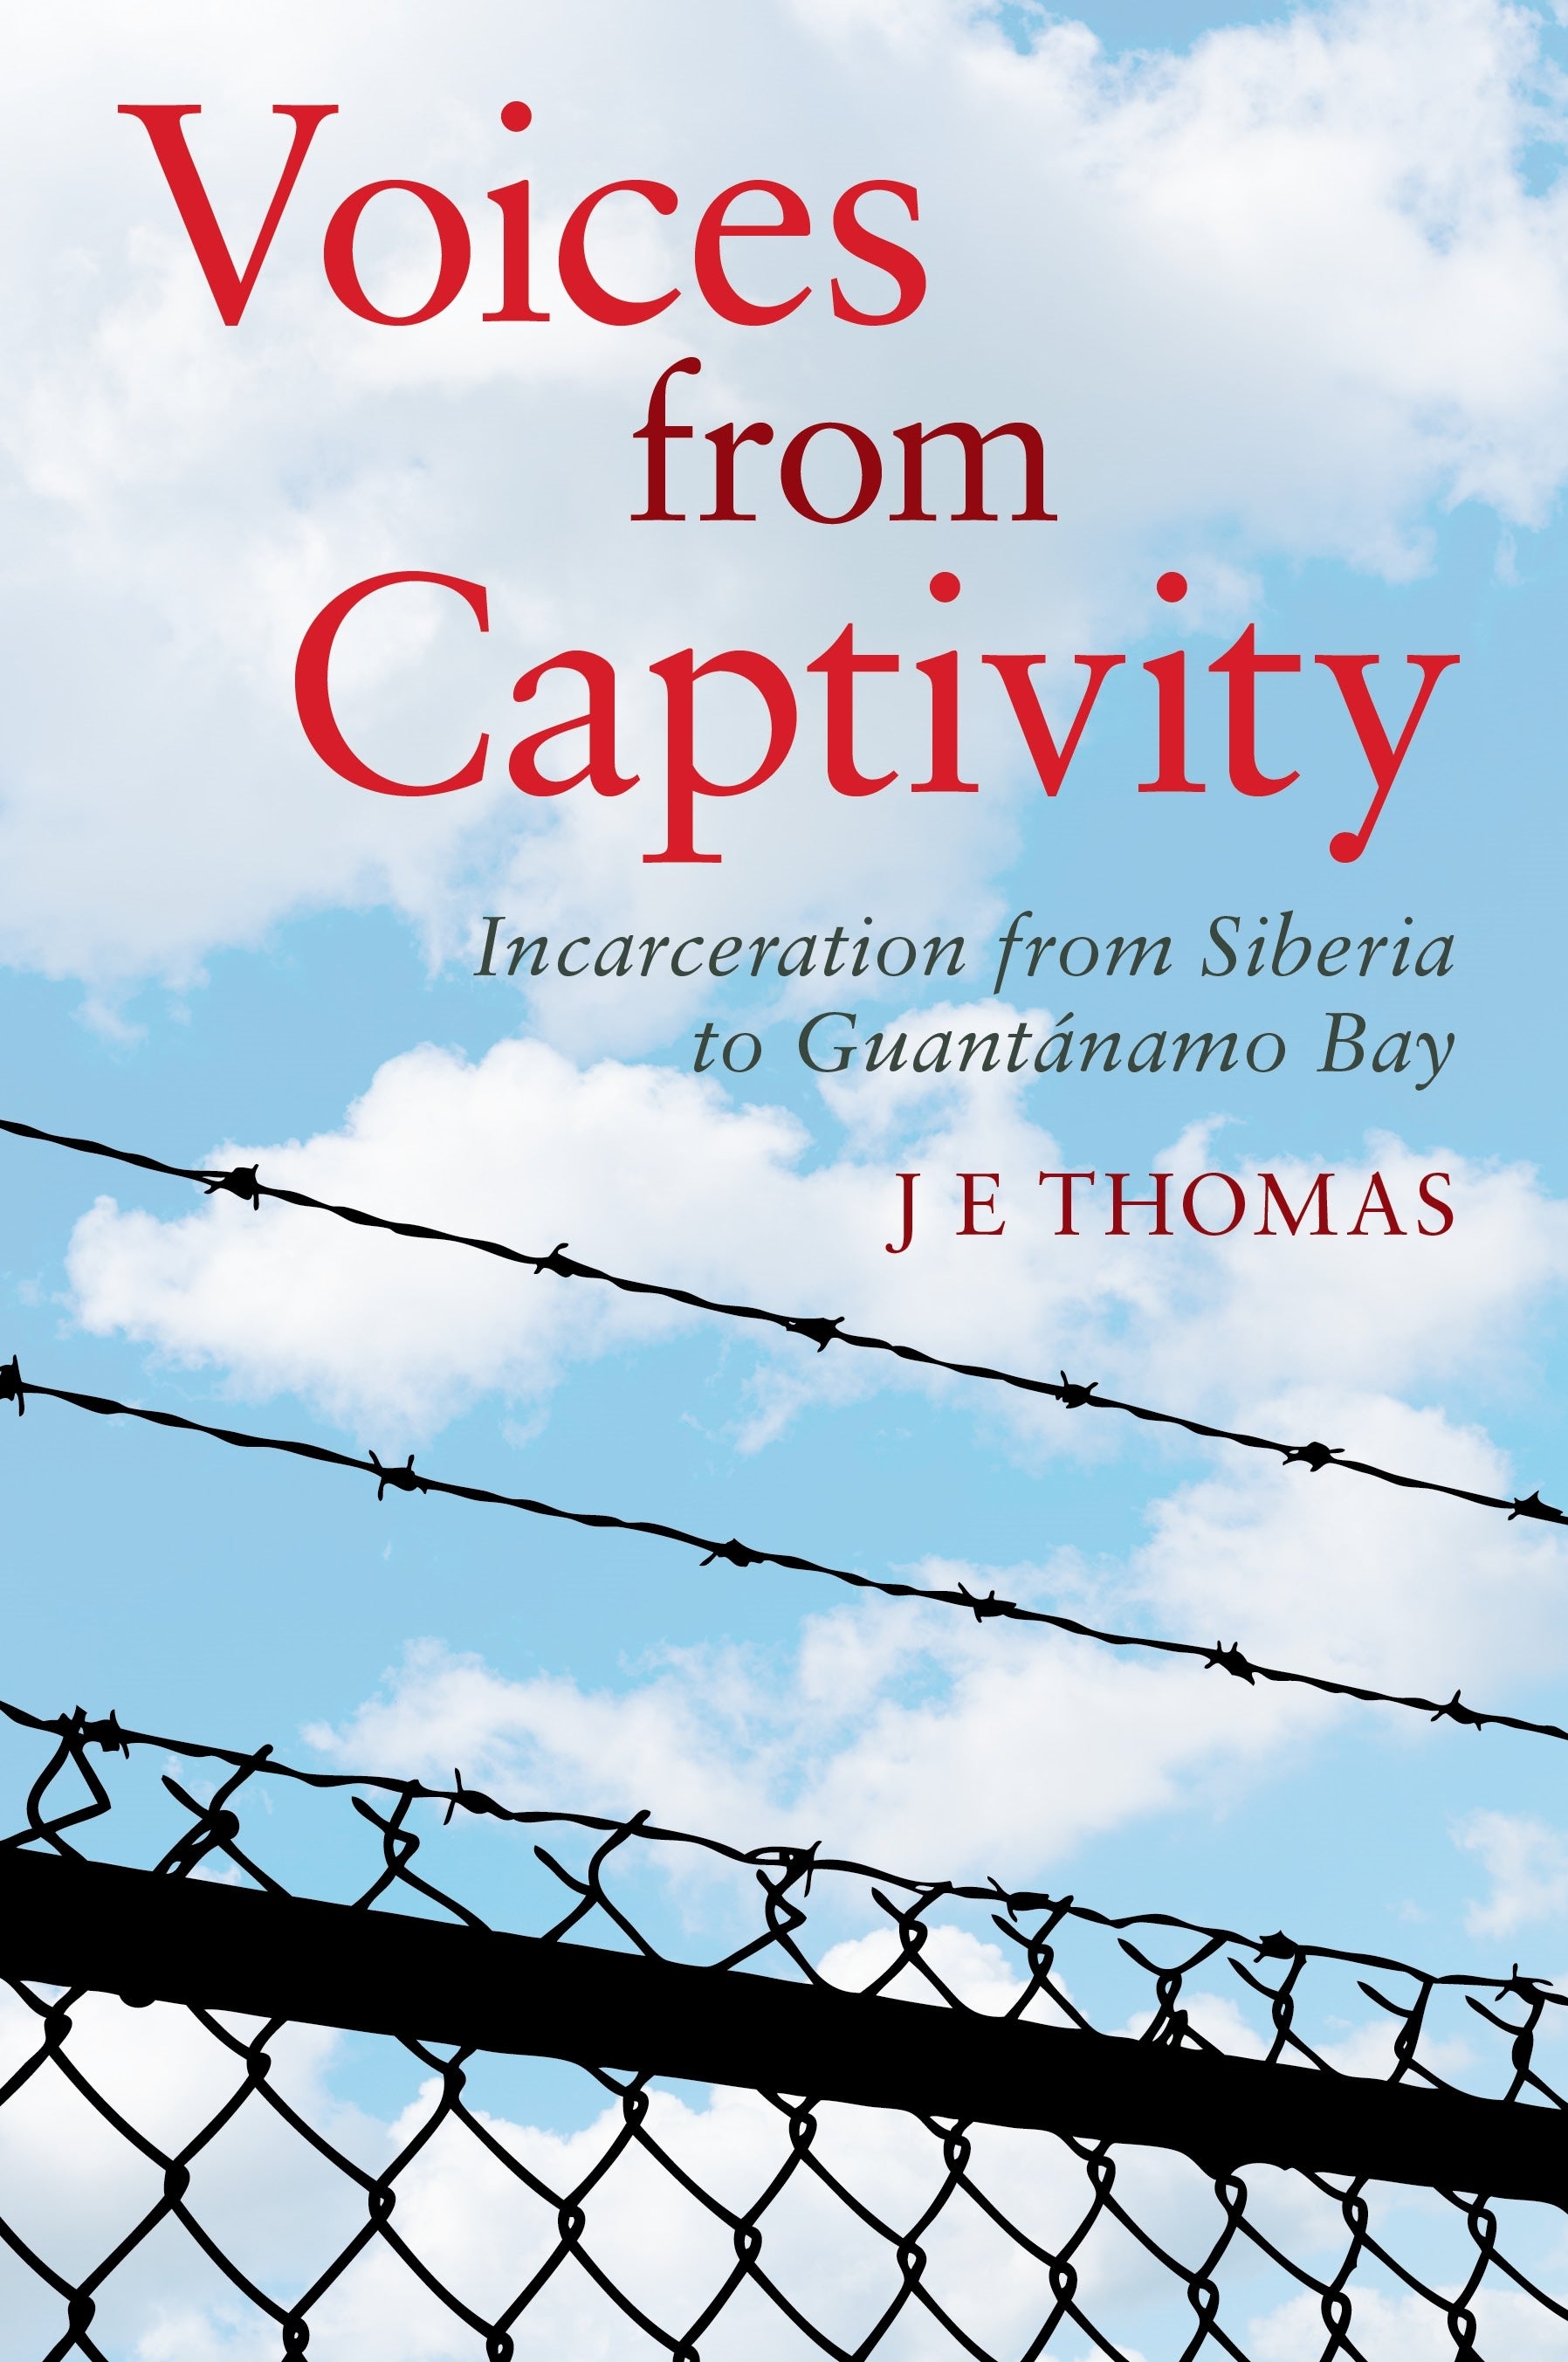 Voices from Captivity by J E Thomas